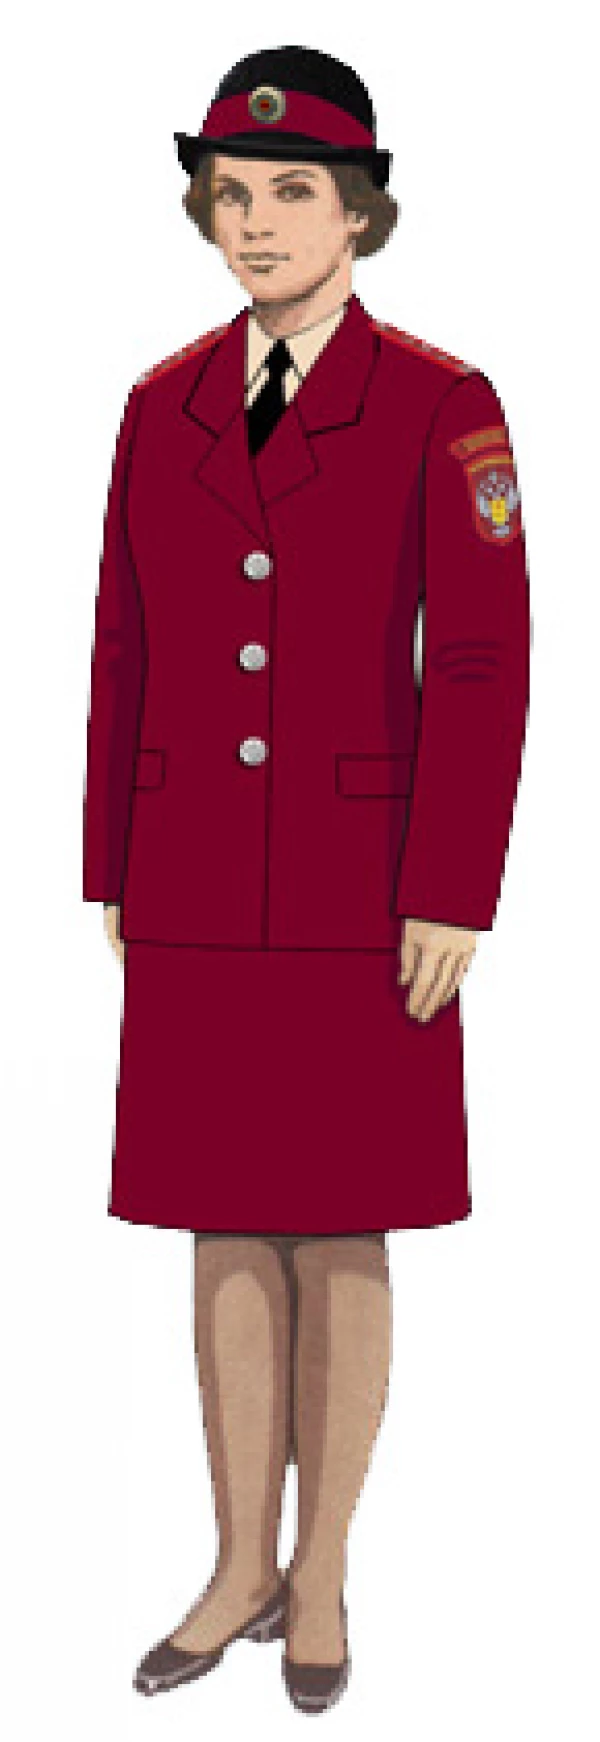 Правила ношения предметов формы одежды гражданских служащих